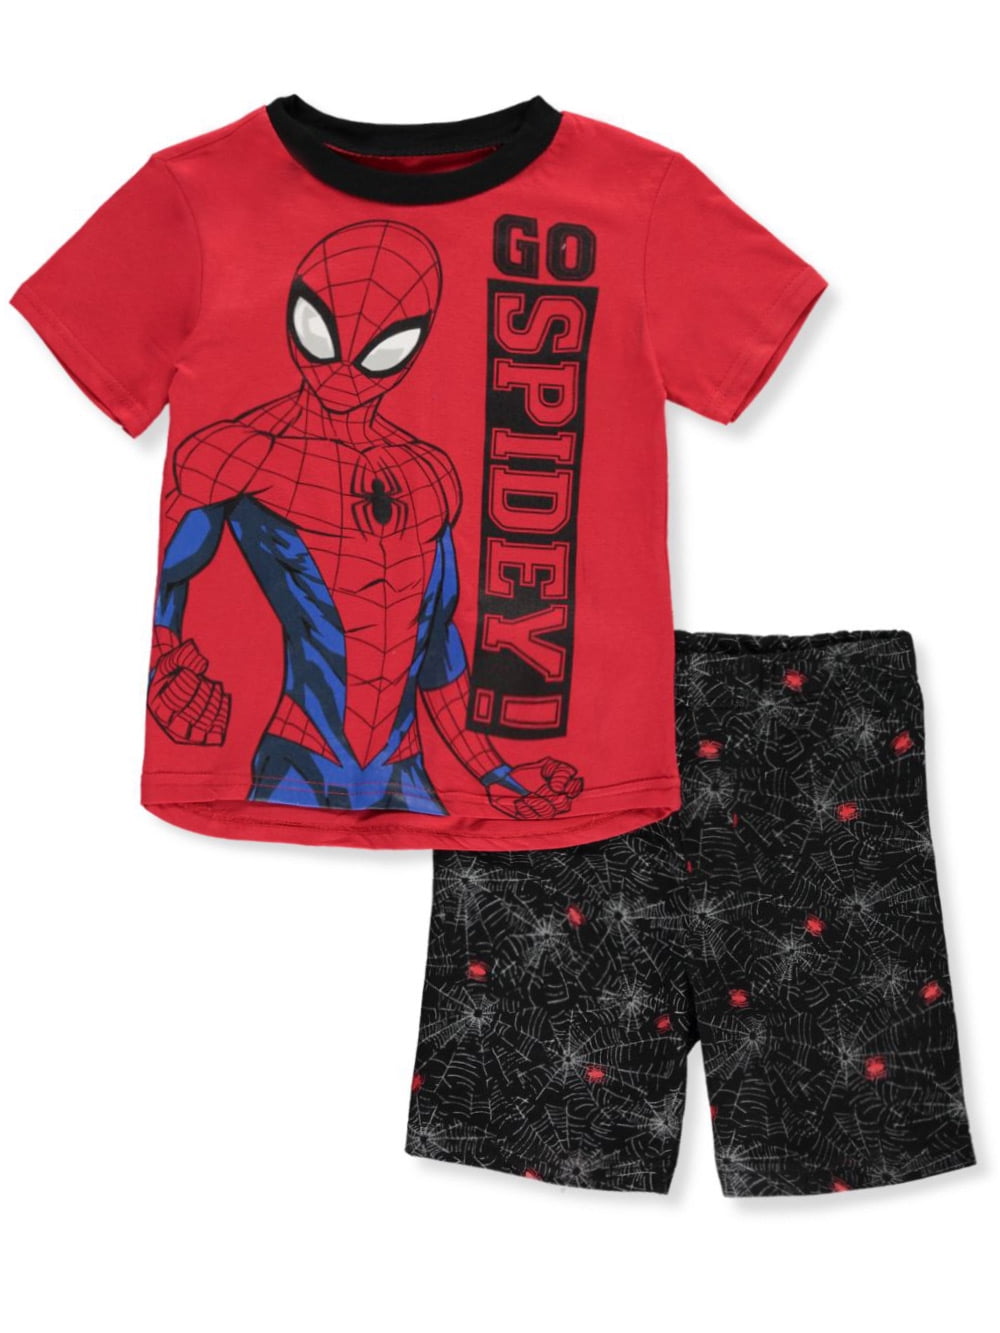 Spider-Man - Spider-Man Boys' Go Spidey! 2-Piece Shorts Set Outfit ...